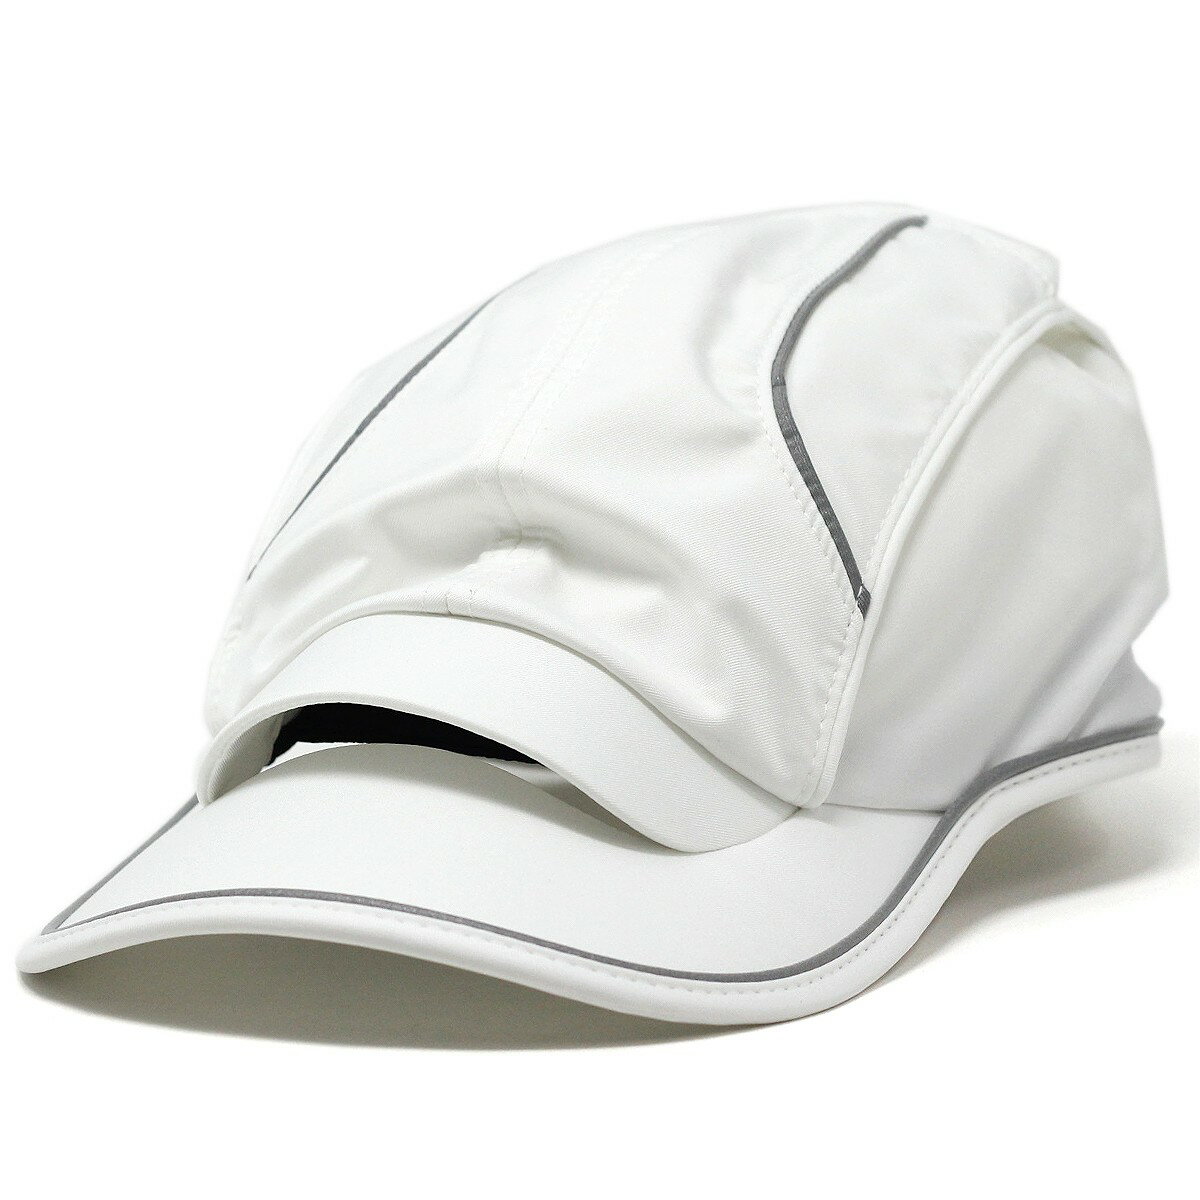 Airpeak エアピーク SPEED2 Flow System ランニングキャップモデル キャップ エアピーク 蒸れない 帽子 ランニング キャップ 白 S-00-20-F ホワイト 熱中症対策 紫外線対策 マラソン ジョギン…